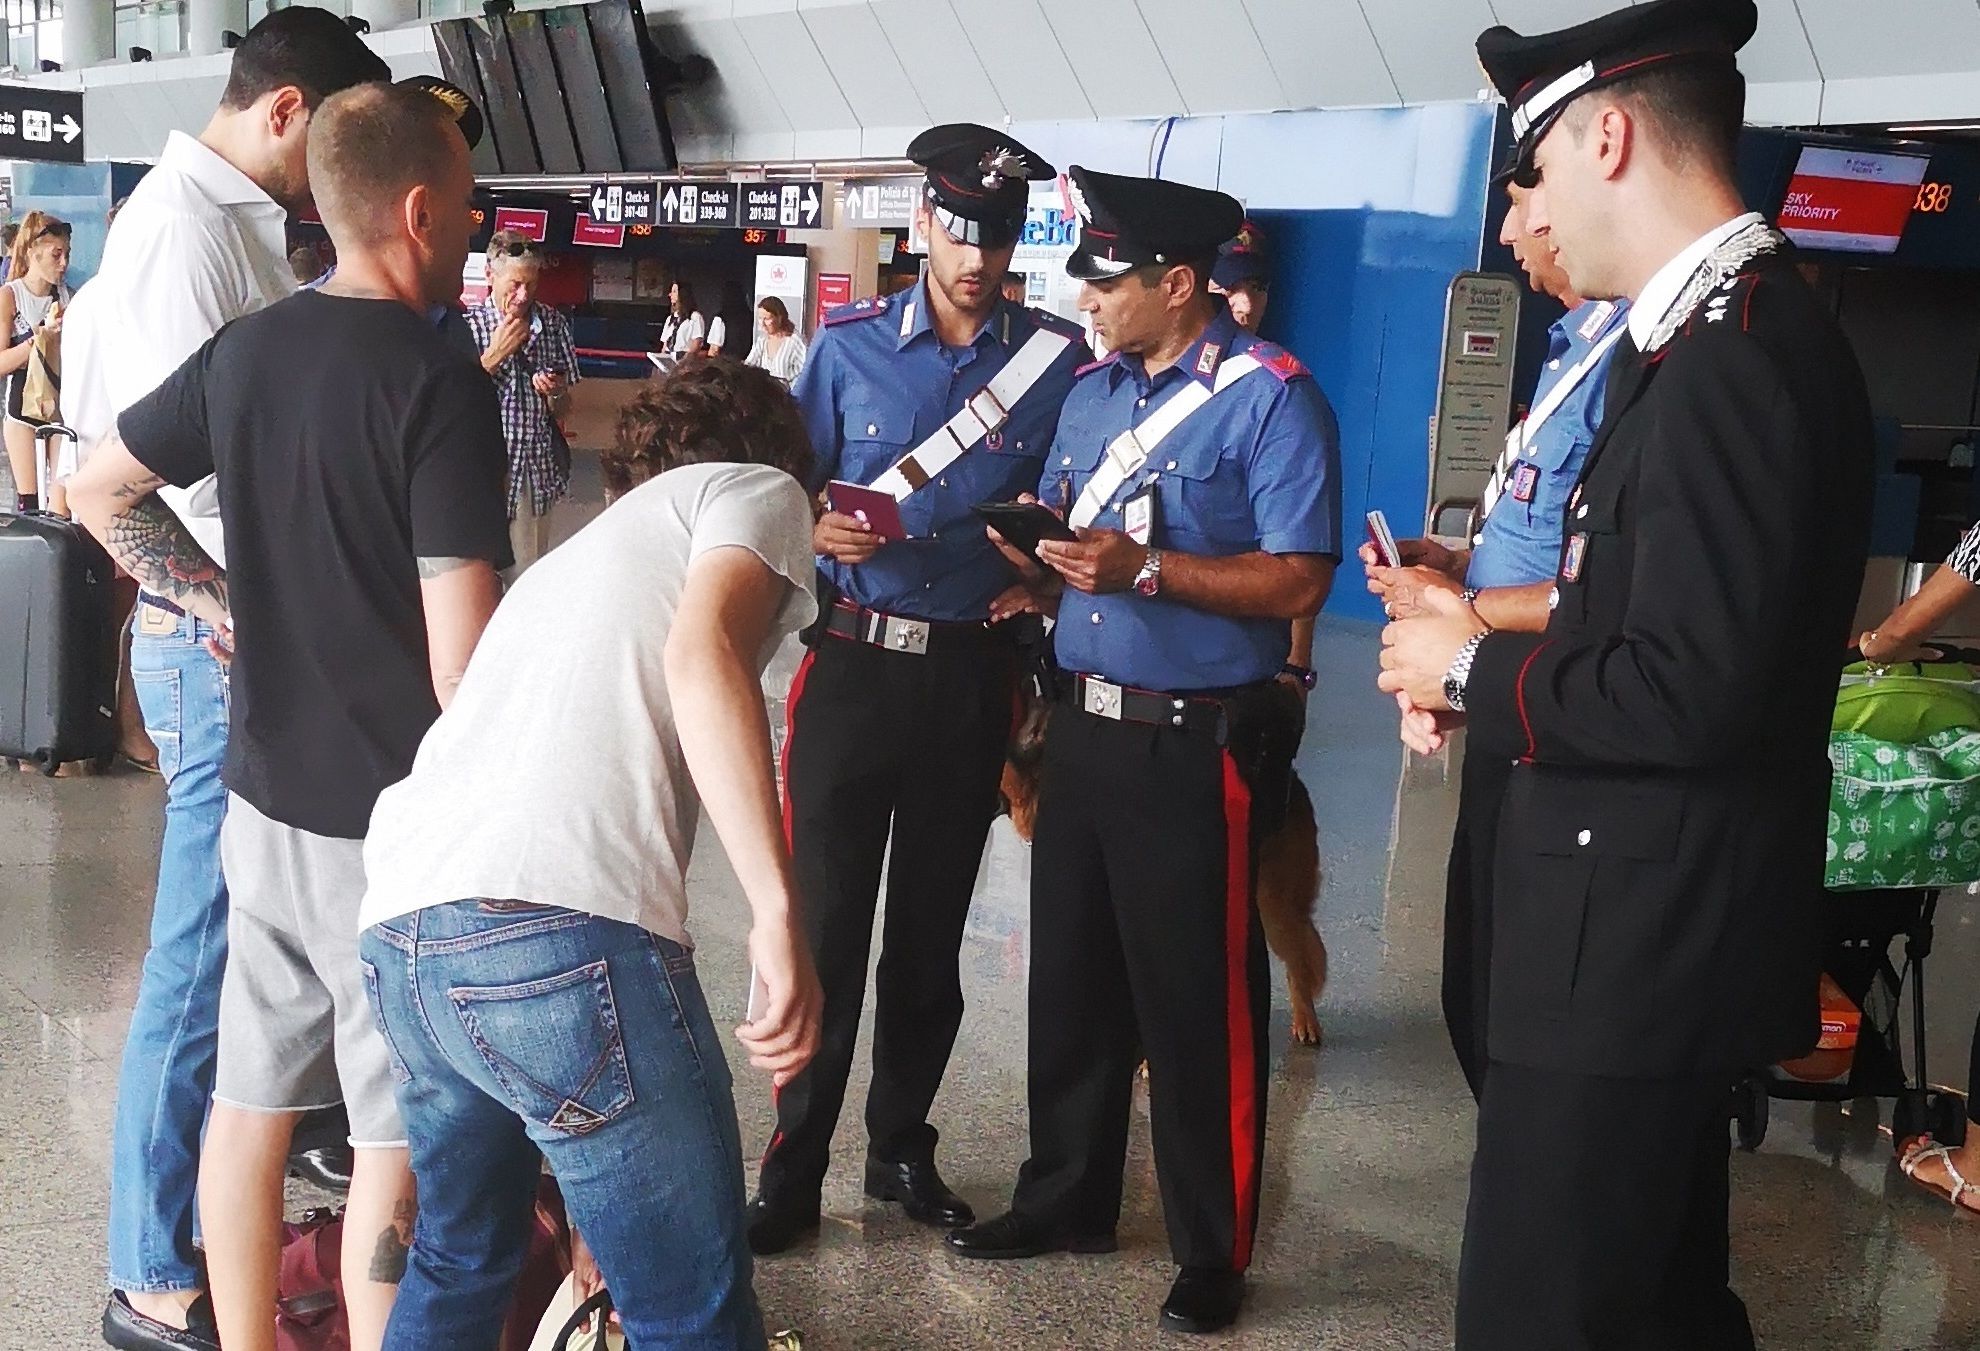 Aeroporto Fiumicino: furti e abusivismo selvaggio